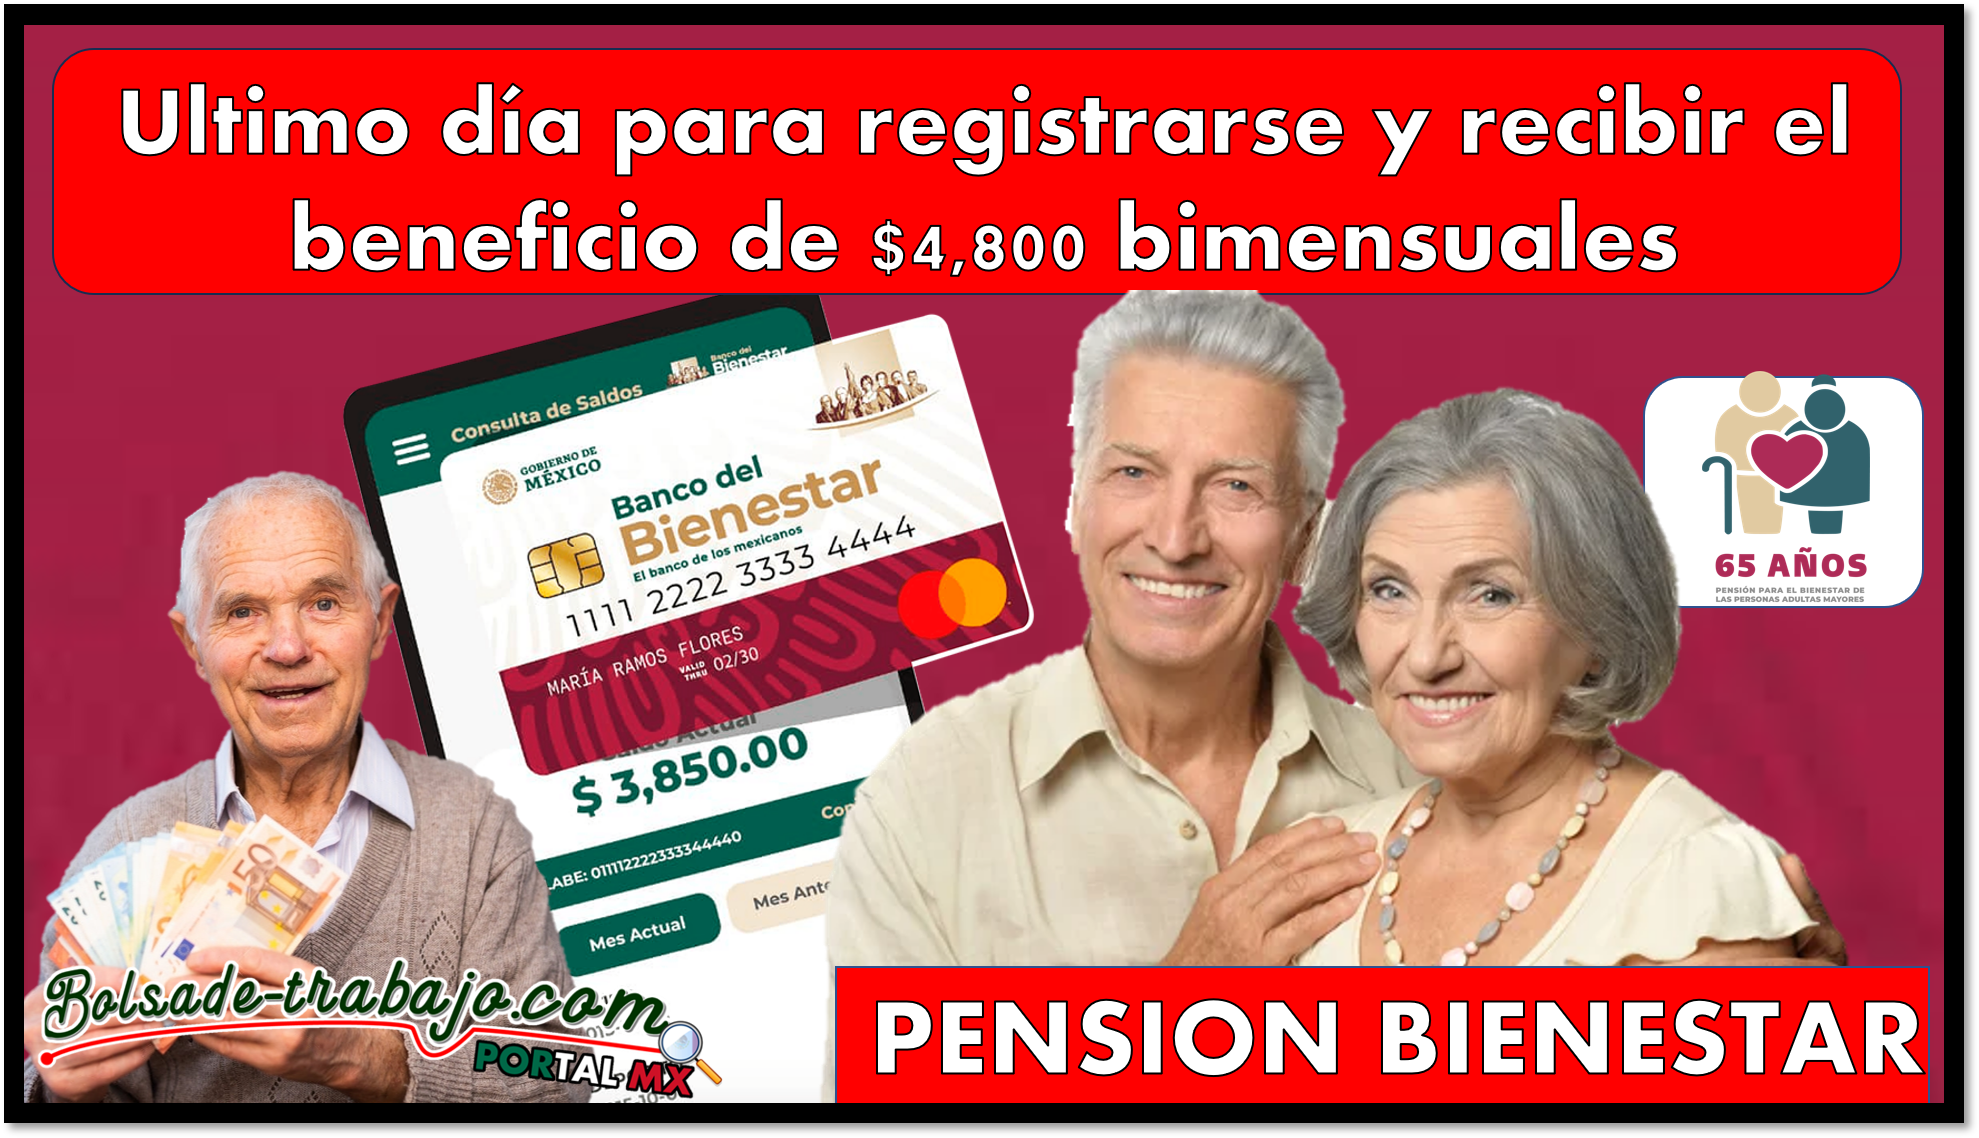 Pensión Bienestar: Ultimo día para registrarse y recibir el beneficio de $4,800 bimensuales